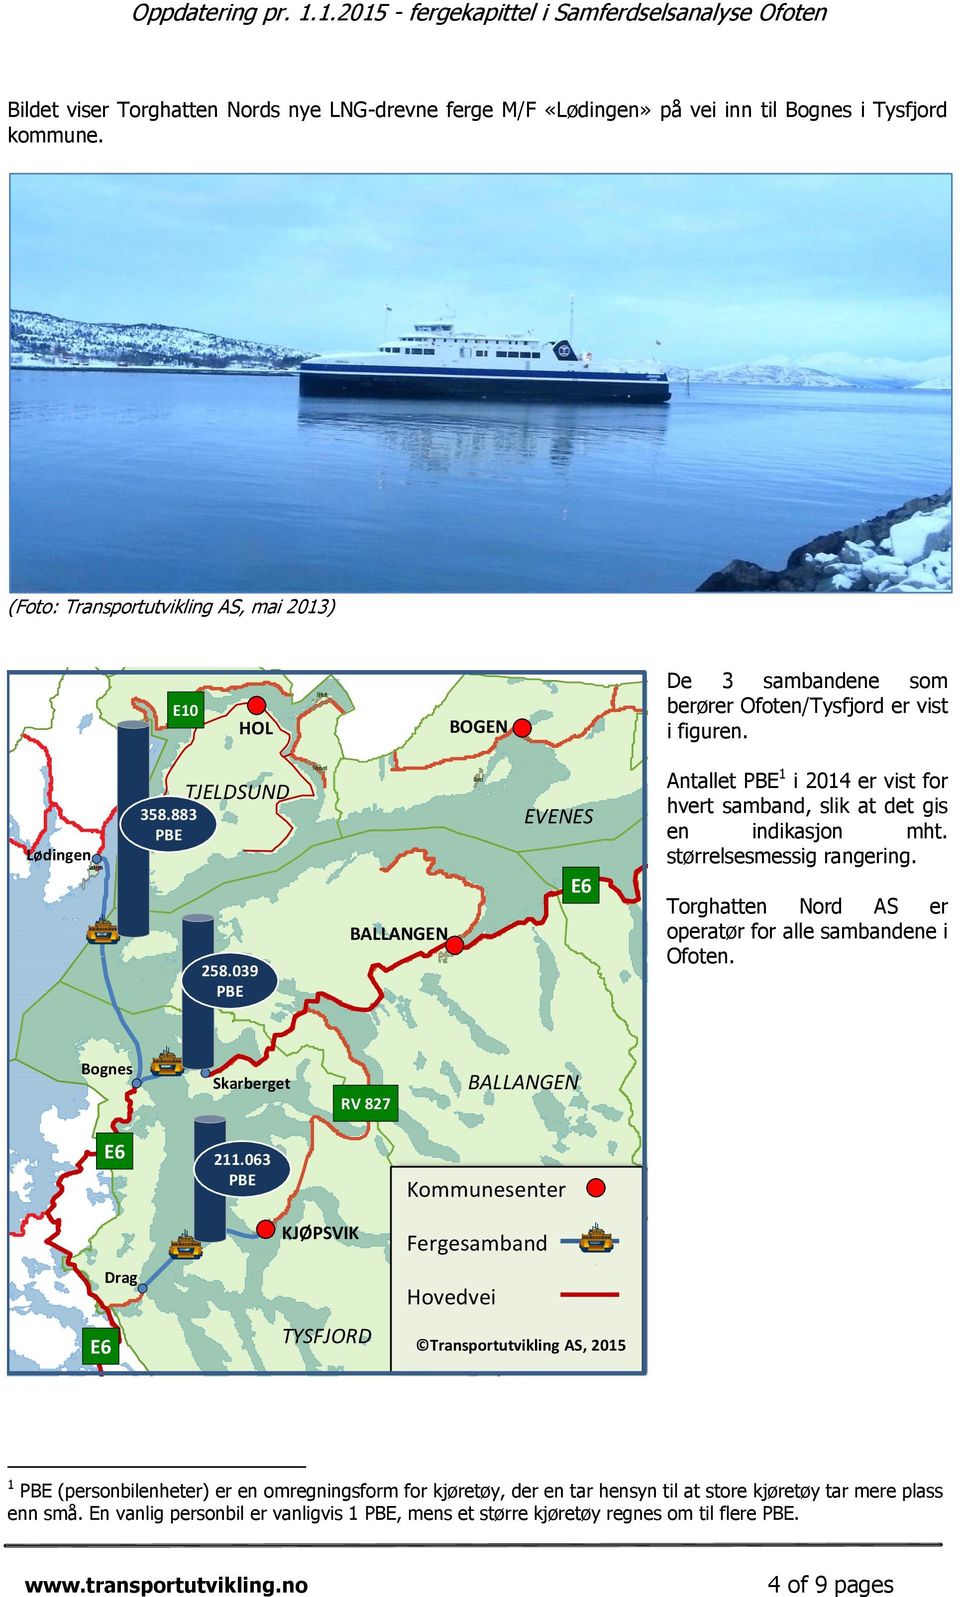 883 PBE TJELDSUND 258.039 PBE Ramsund BALLANGEN Ballangen Liland EVENES E6 Antallet PBE 1 i 2014 er vist for hvert samband, slik at det gis Narvik en NARVIK indikasjon mht. størrelsesmessig rangering.